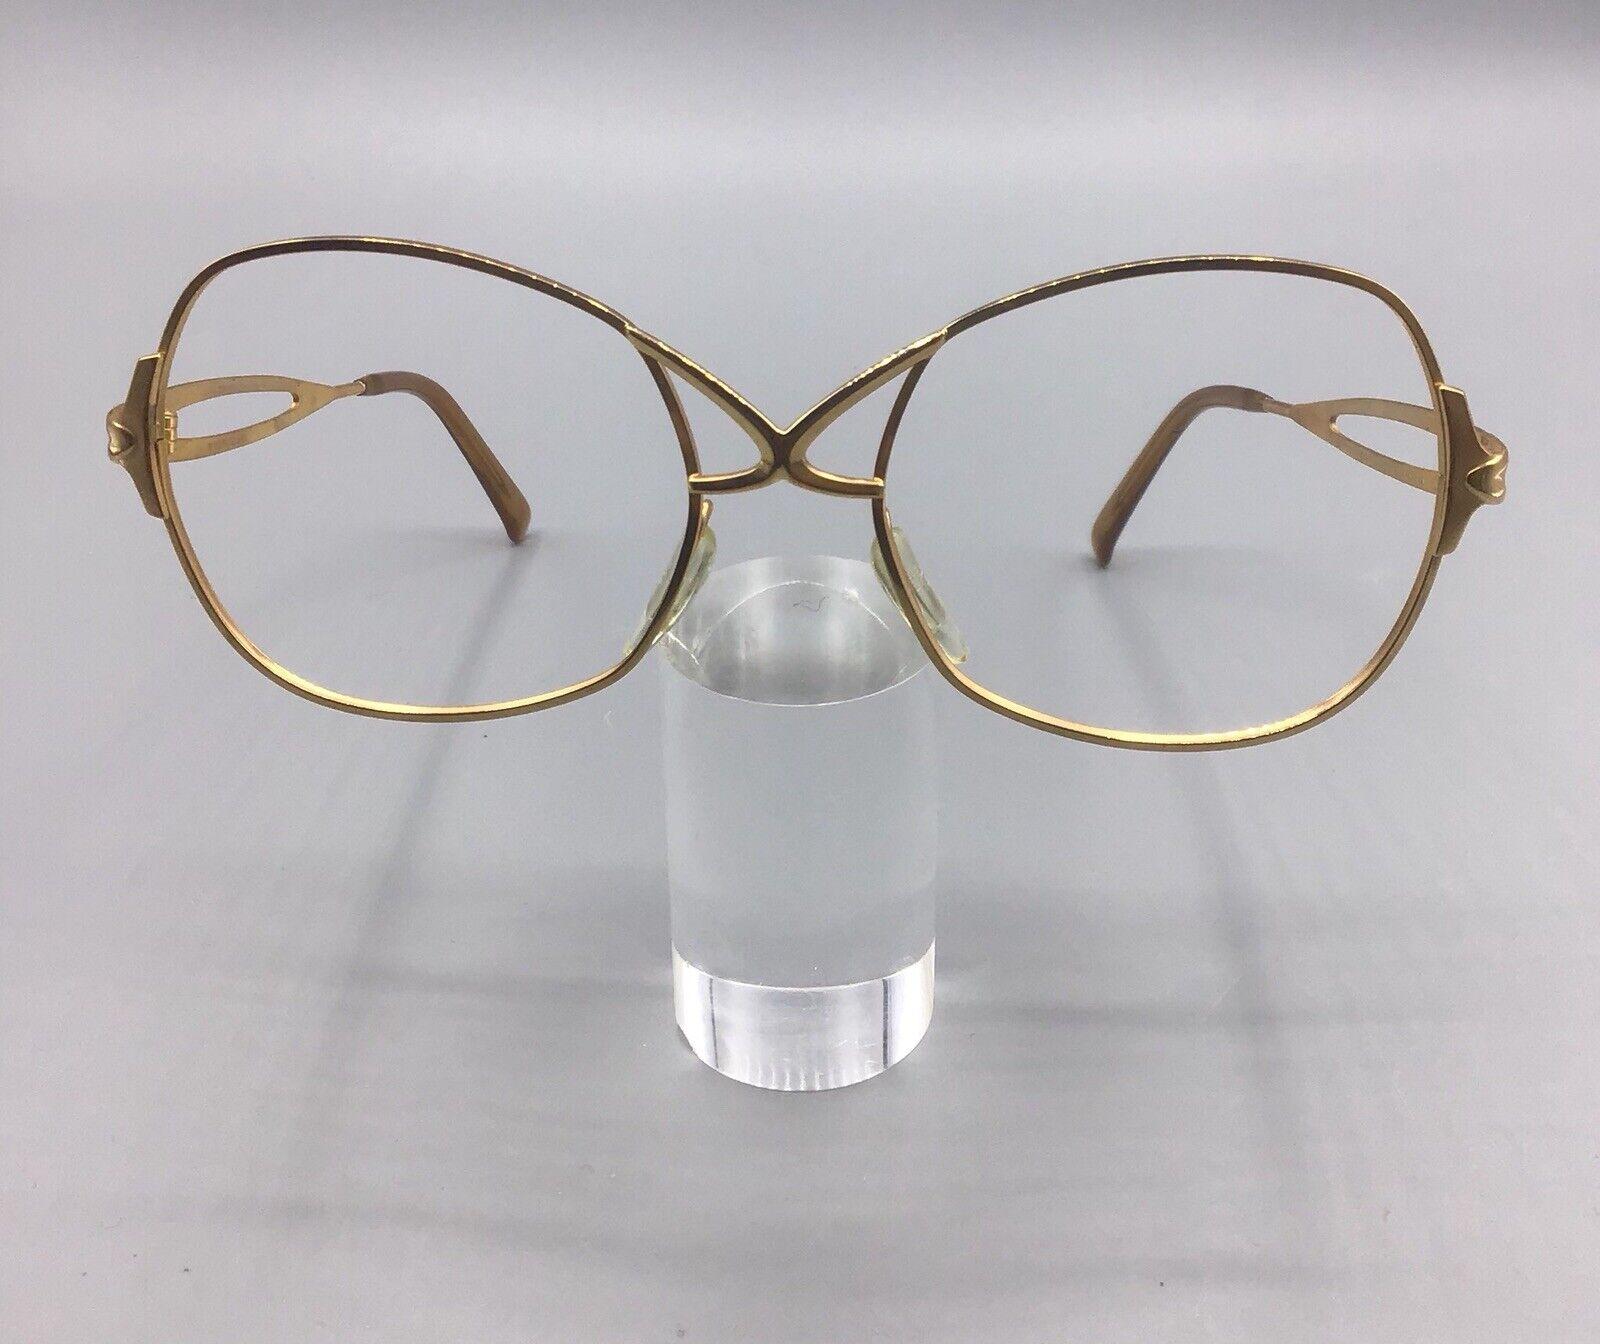 ViennaLine occhiale vintage gold frame eyewear brillen lunettes model 130-5 frame Austria